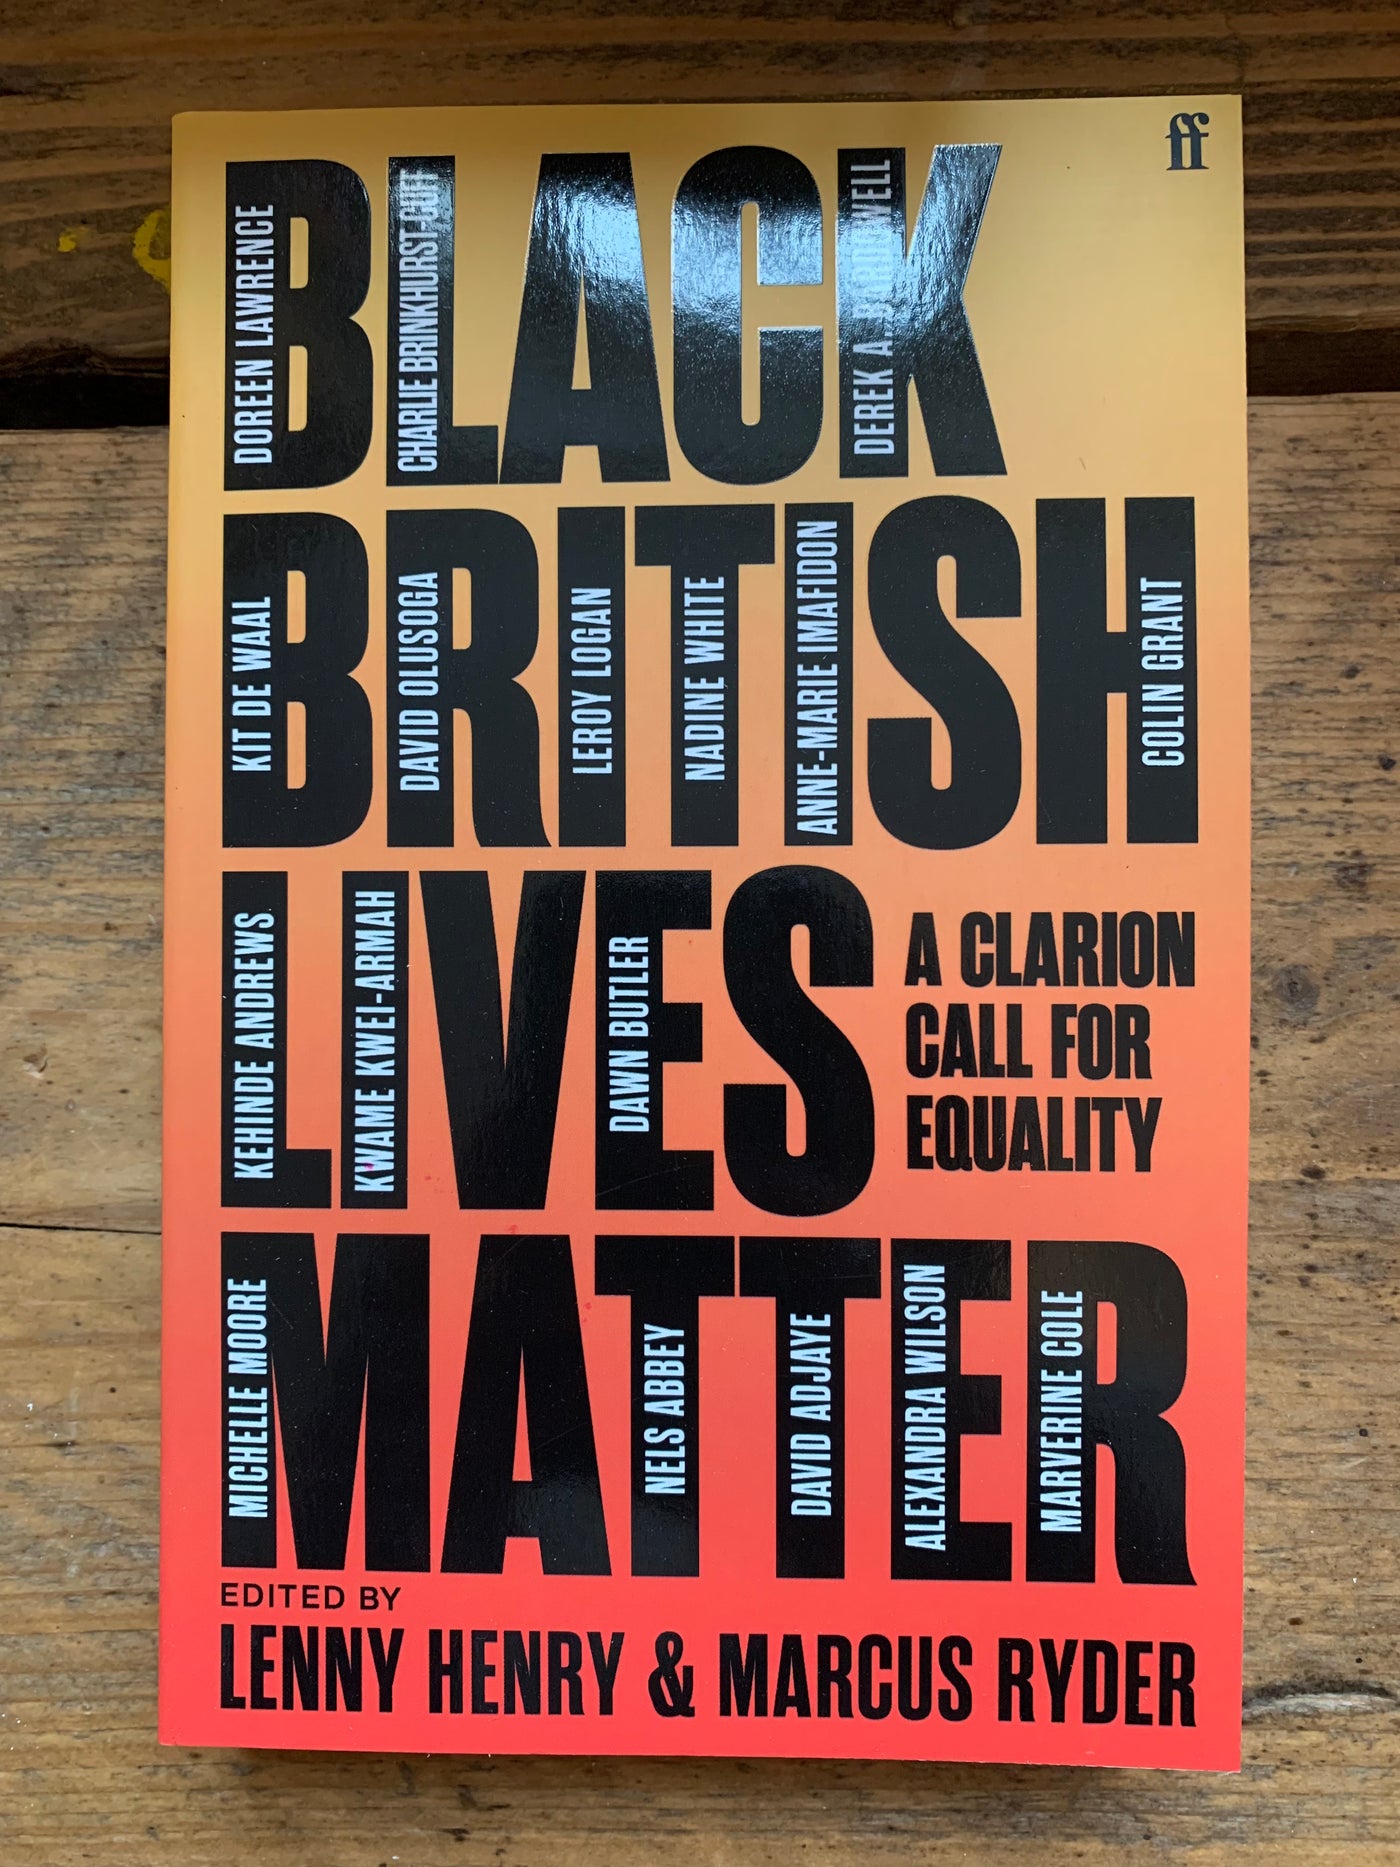 Black British Lives Matter